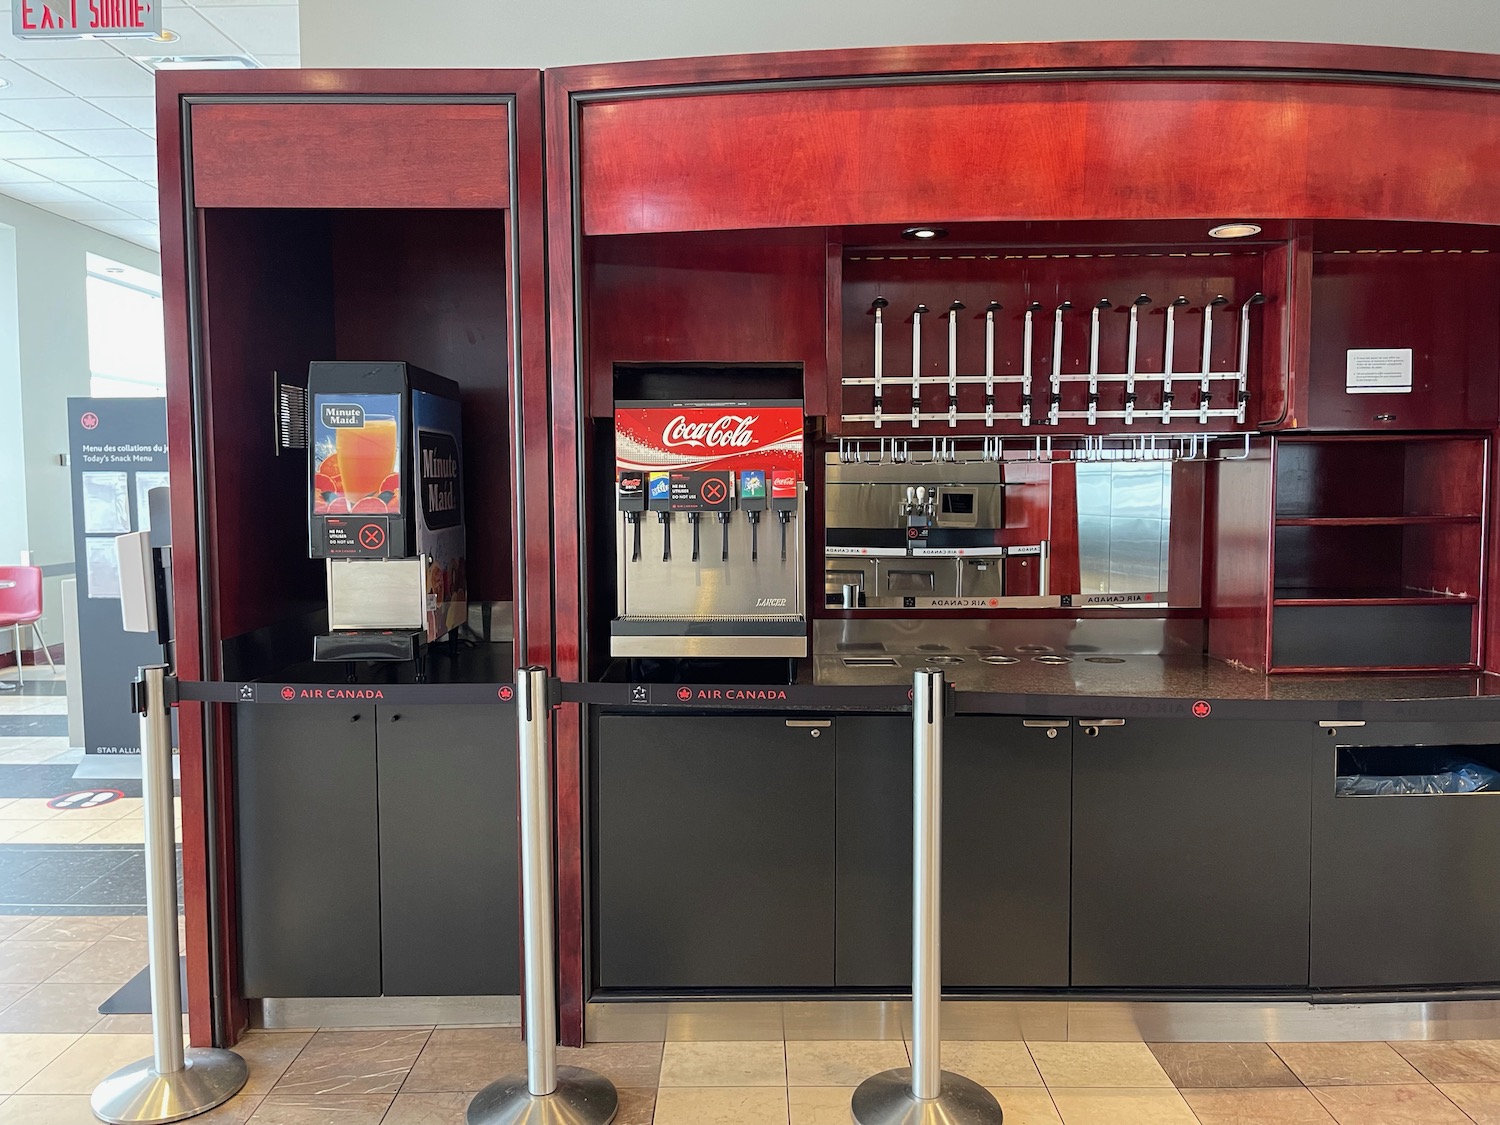 a soda machine and a drink dispenser